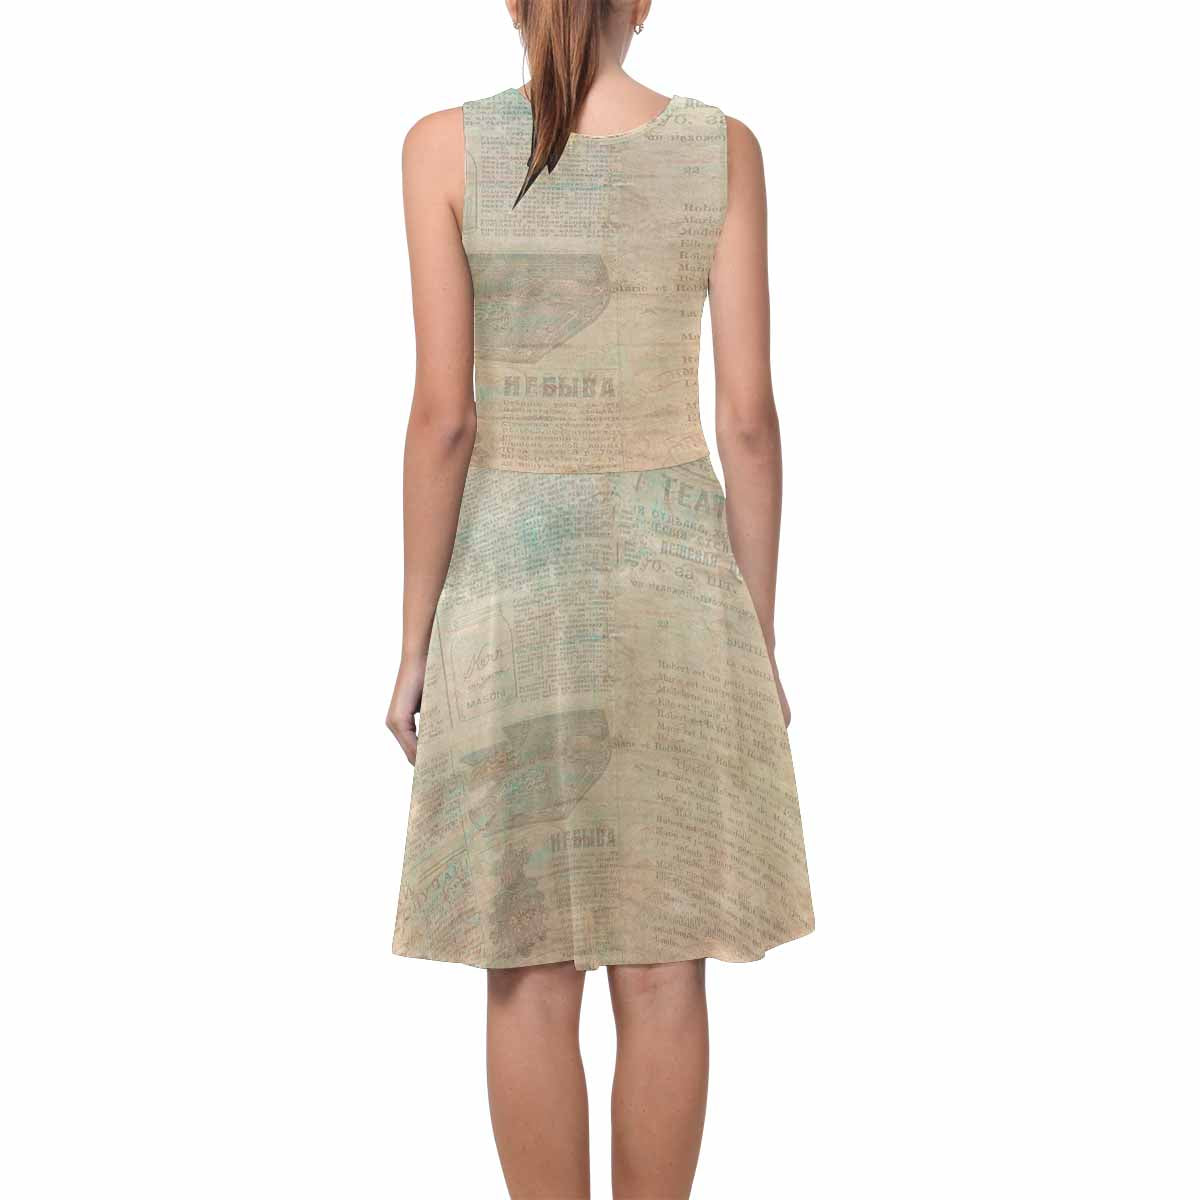 Antique General summer dress, MODEL 09534, design 24